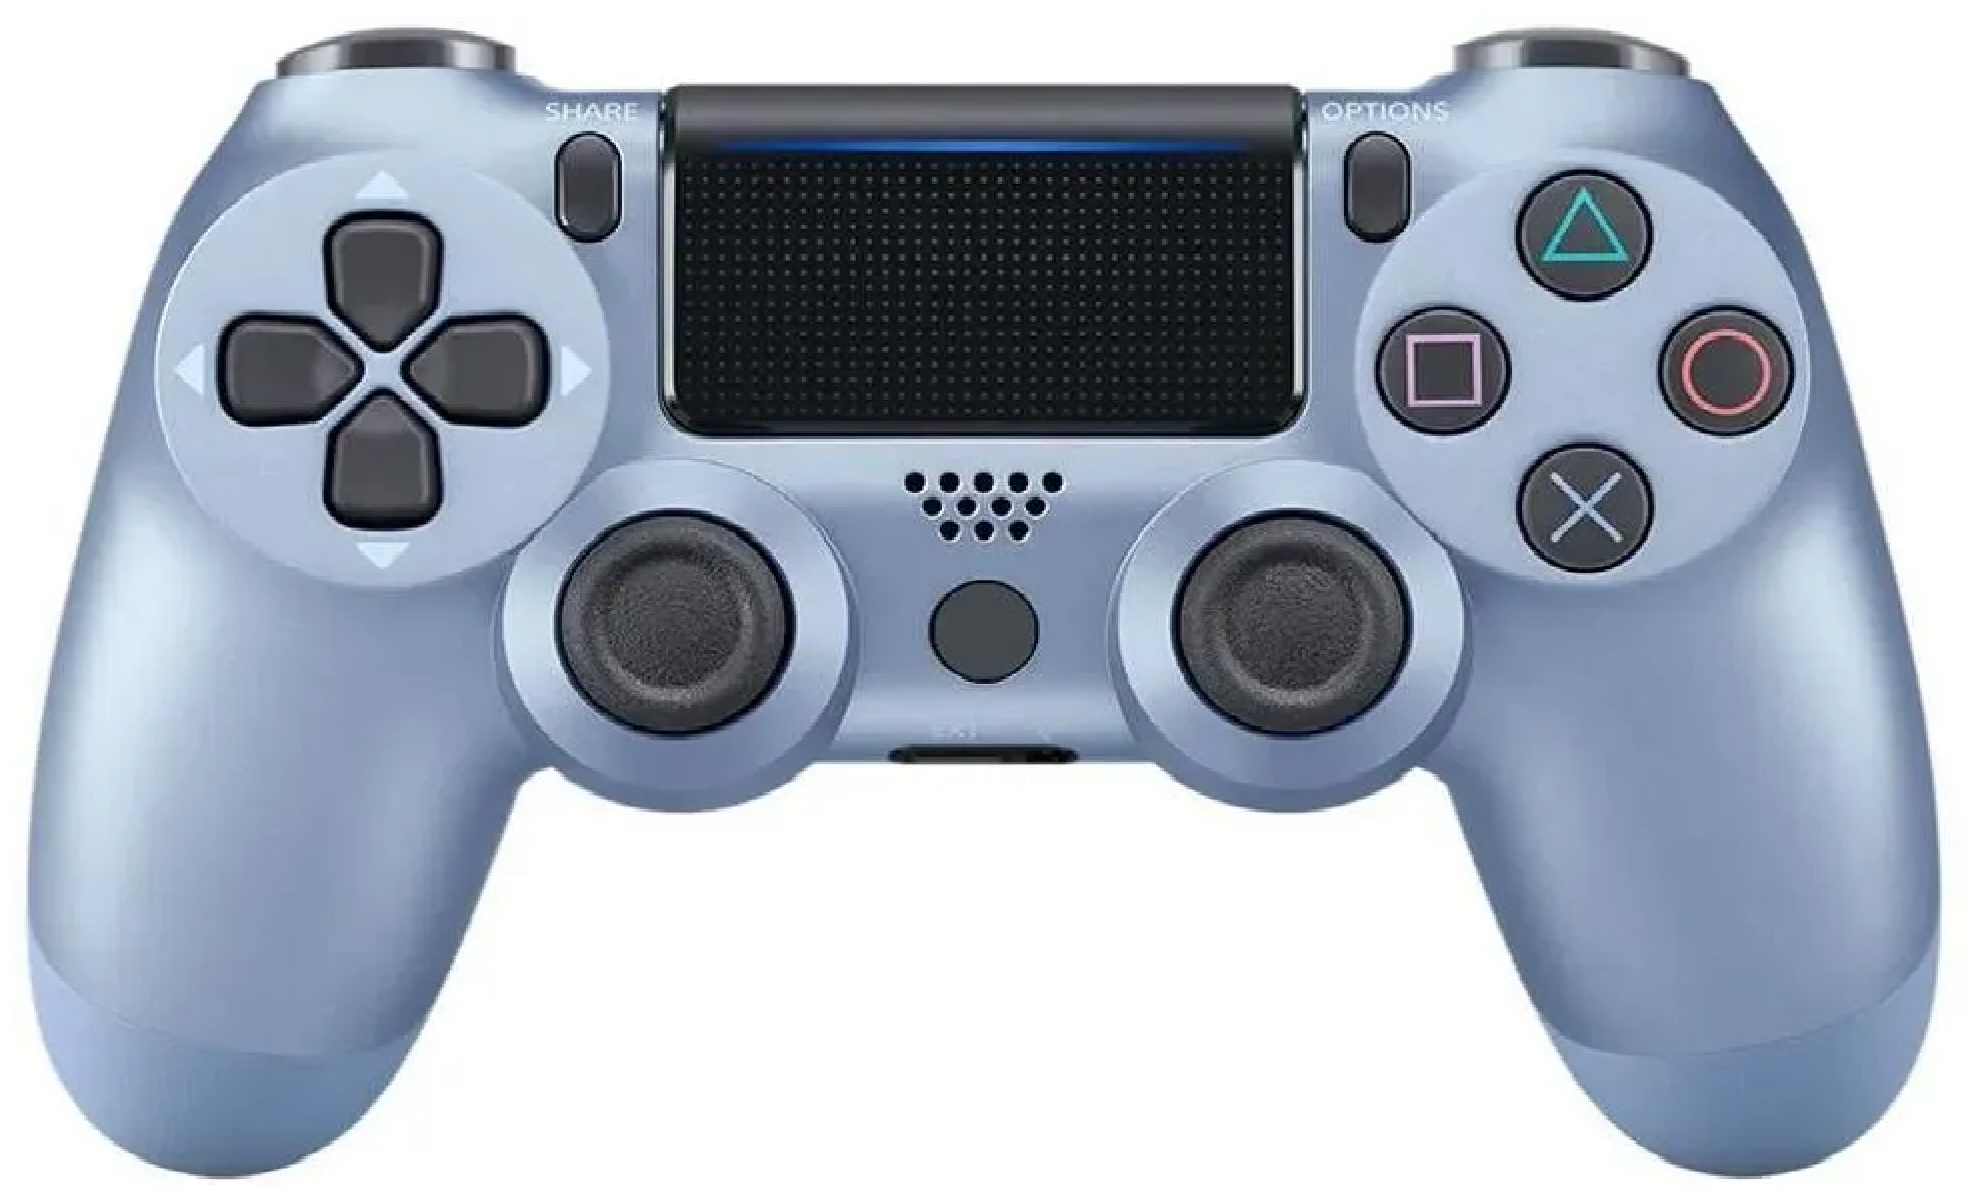 Геймпад-Джойстик для Playstation 4 беспроводной Wireless Controller / Блютуз контроллер PS4 (стальной синий)